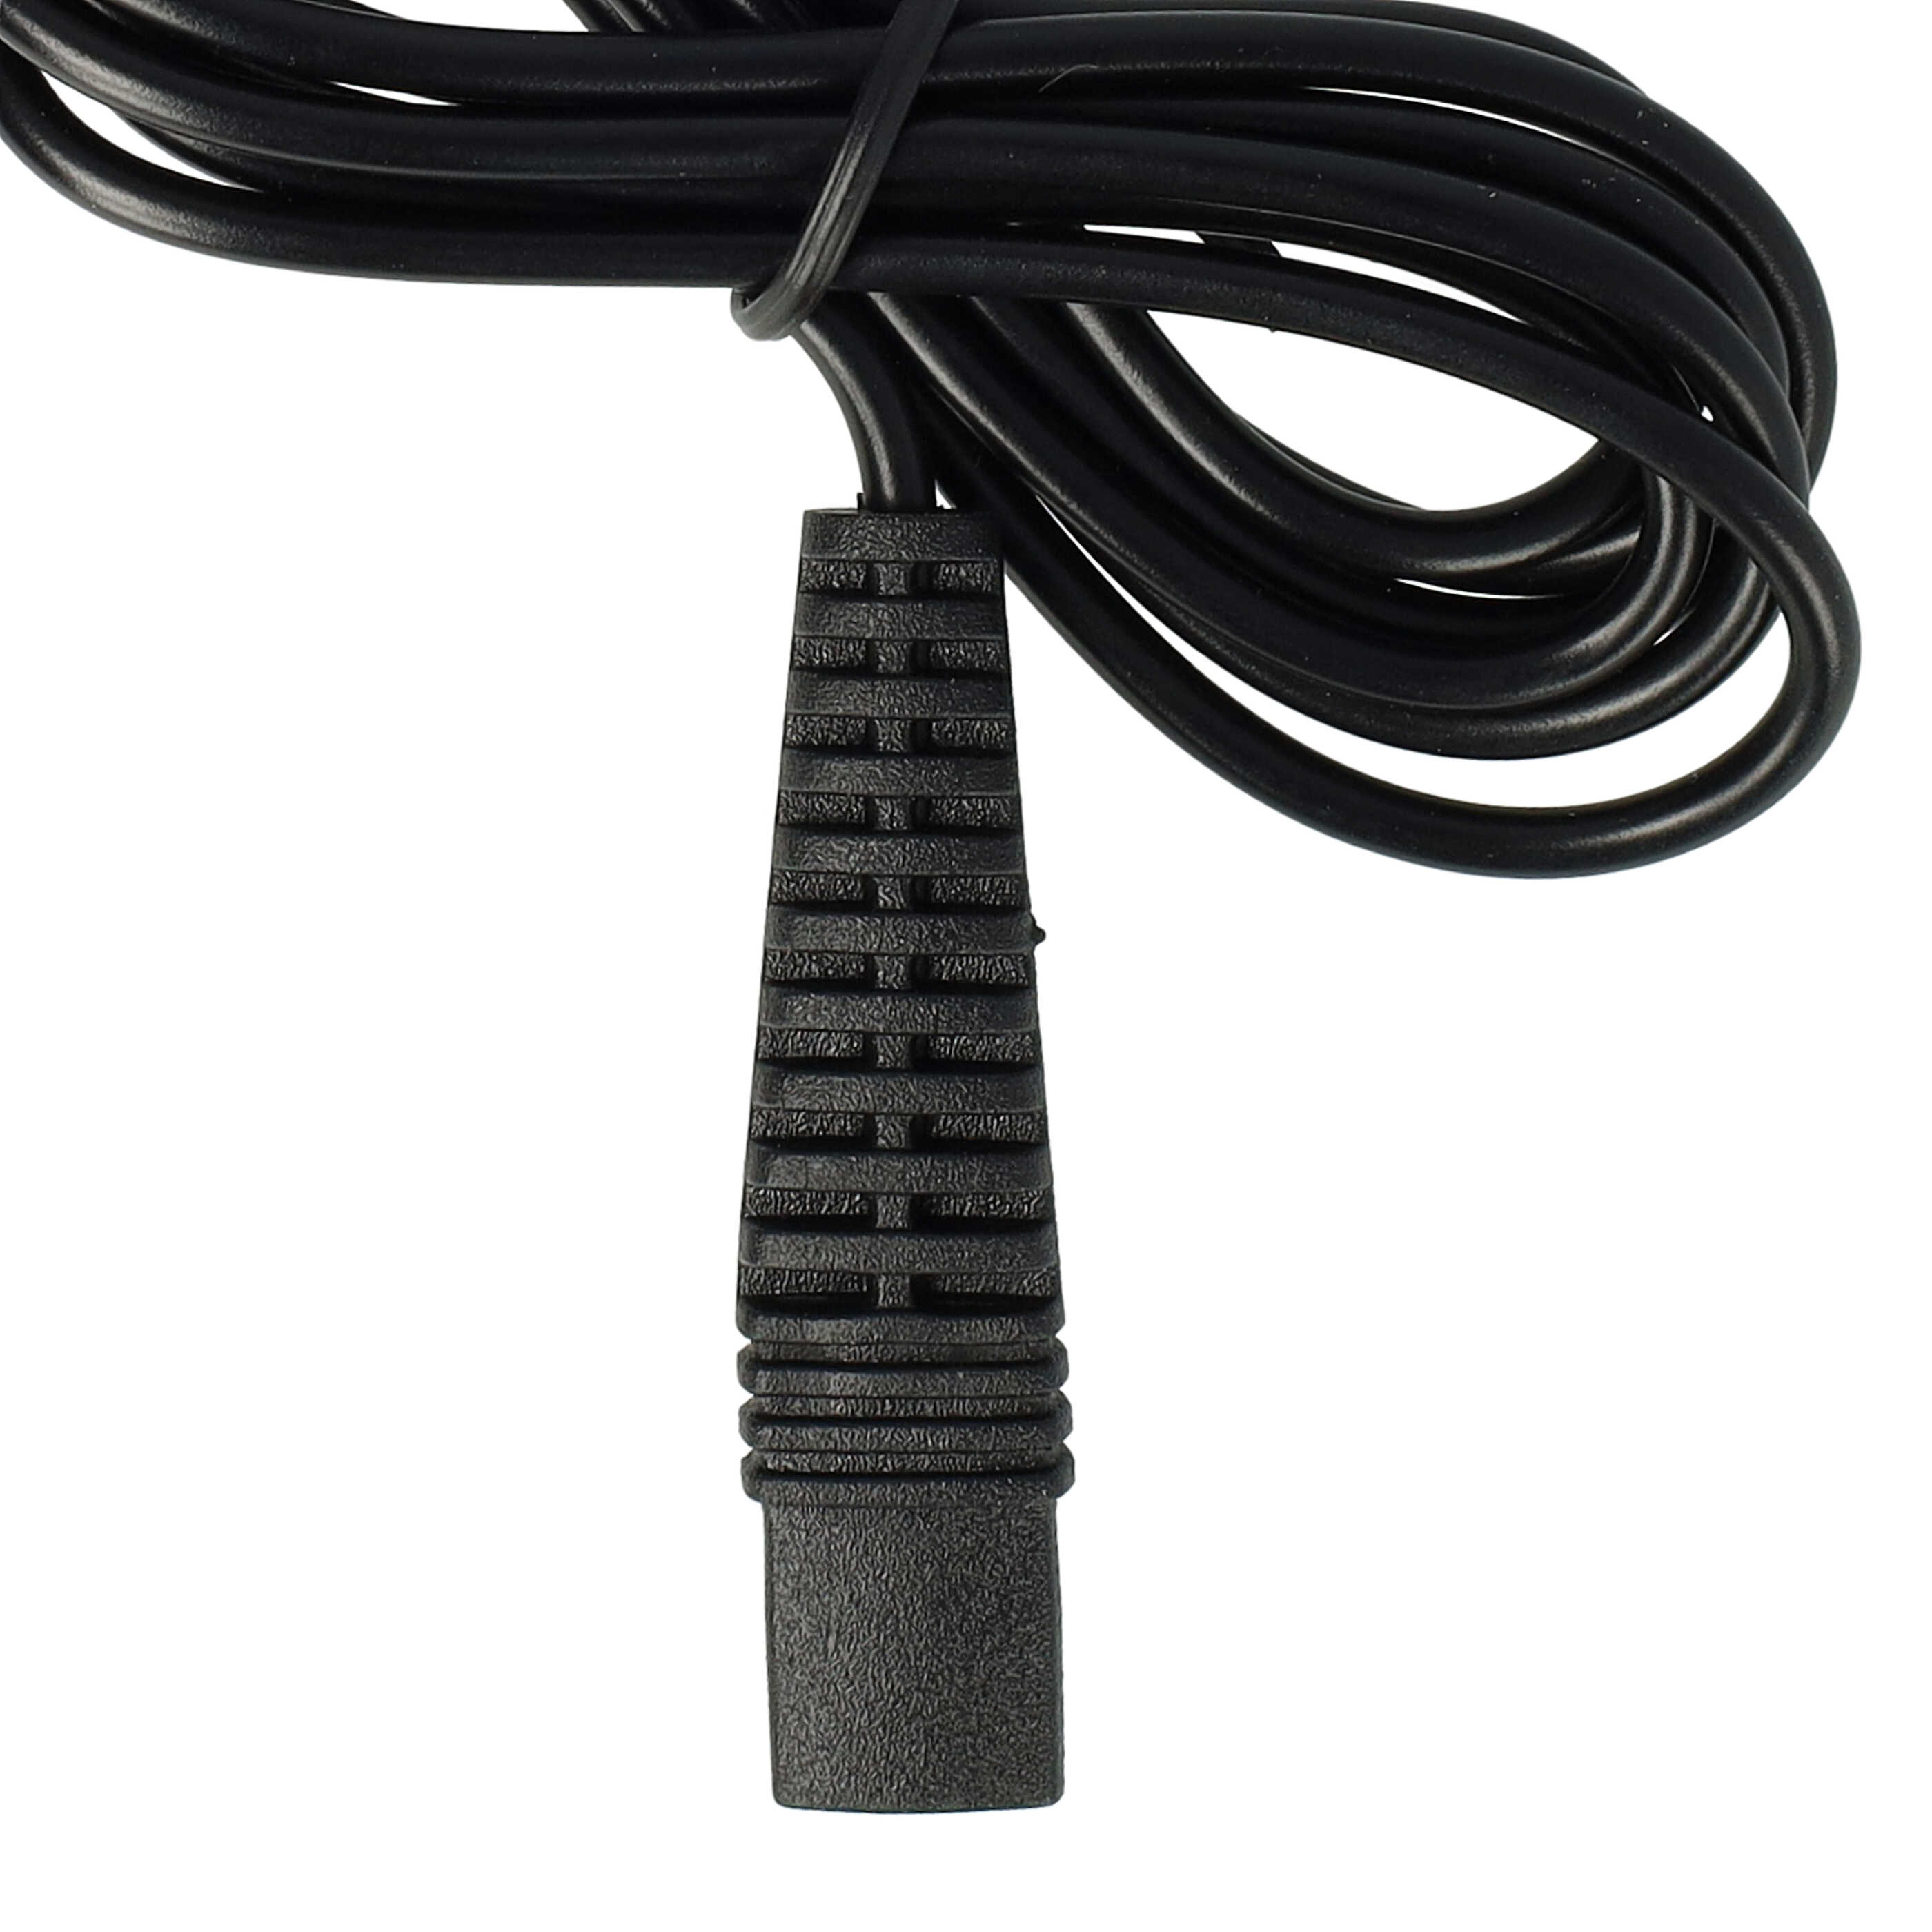 USB Ladekabel passend für Braun, Oral-B HC20 (5611) Rasierer, Zahnbürste u.a. - 120 cm